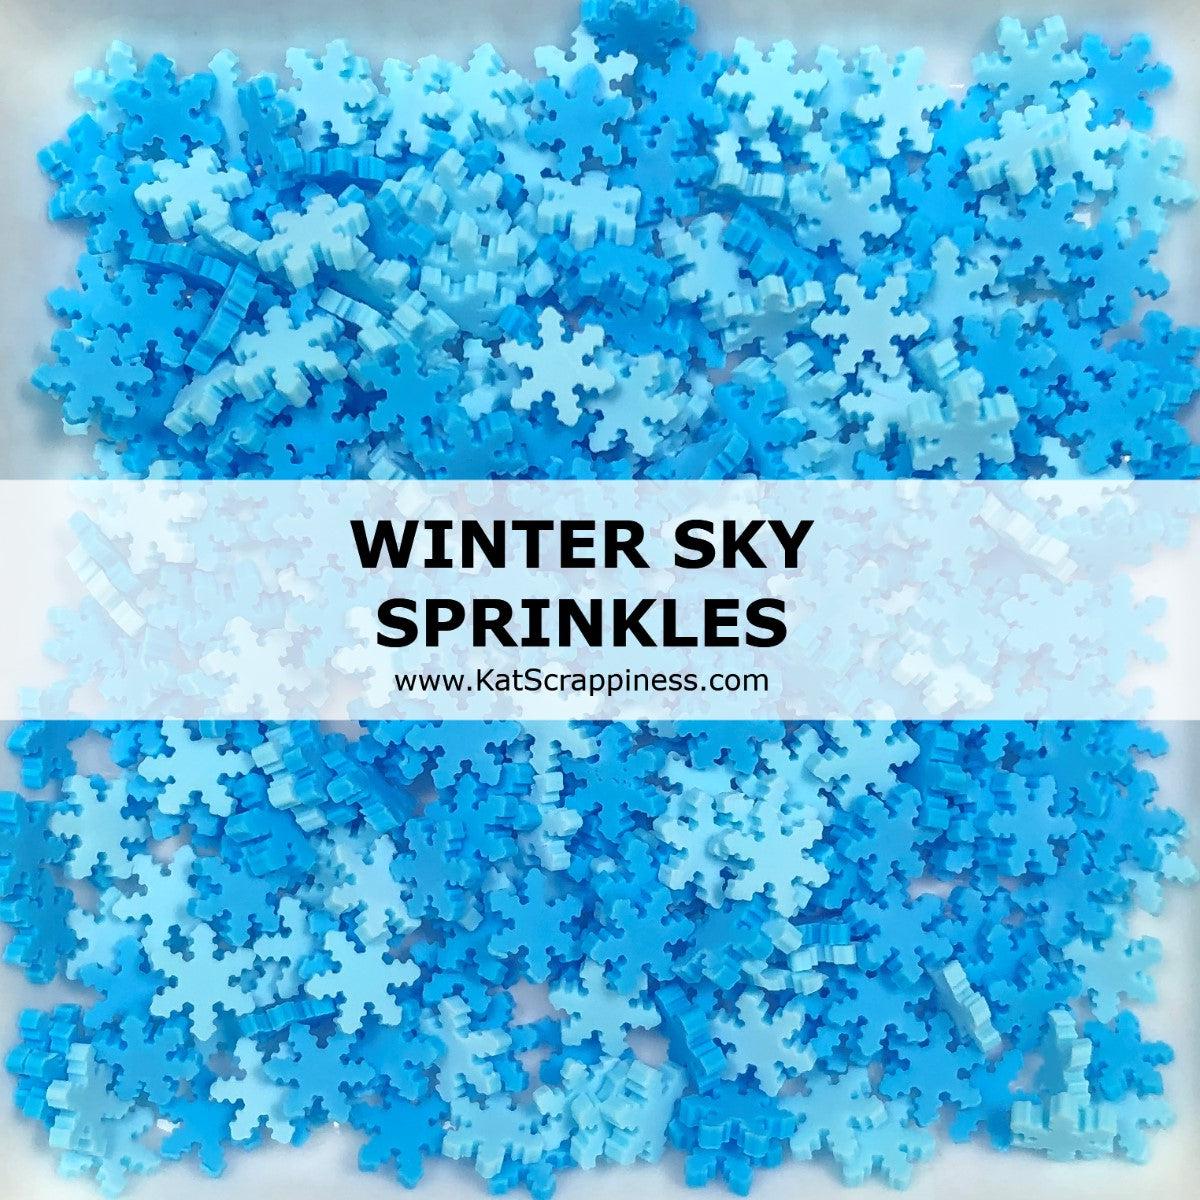 Snowflake Sprinkles